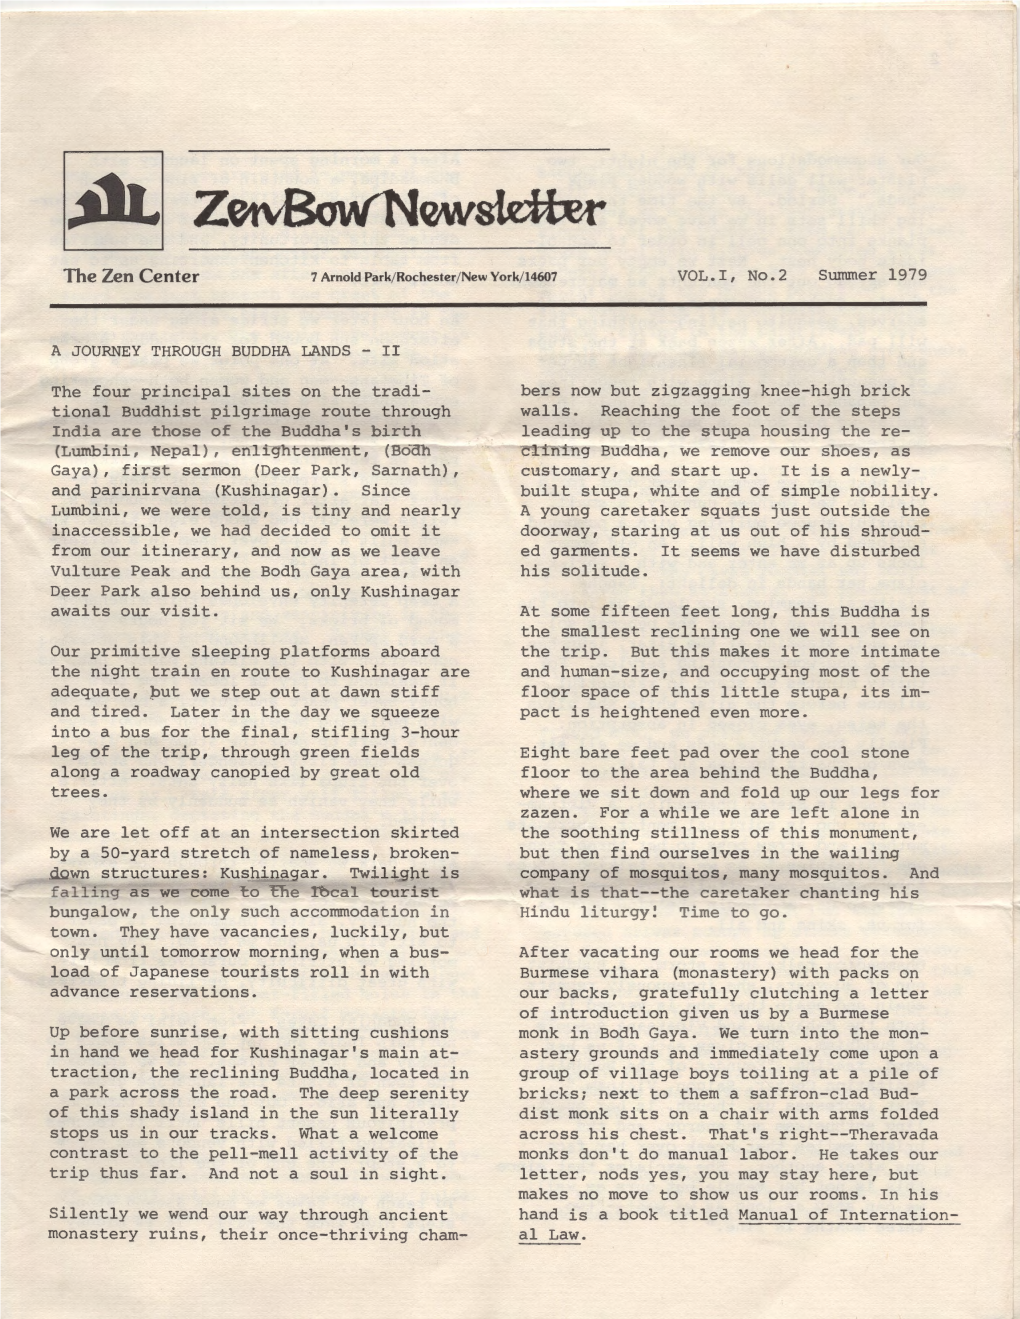 ~ Zetvbw/Newslefur the Zen Center 7 Arnold Park/ Rochester/ New York/ 14607 VOL.I, No.2 Summer 1979